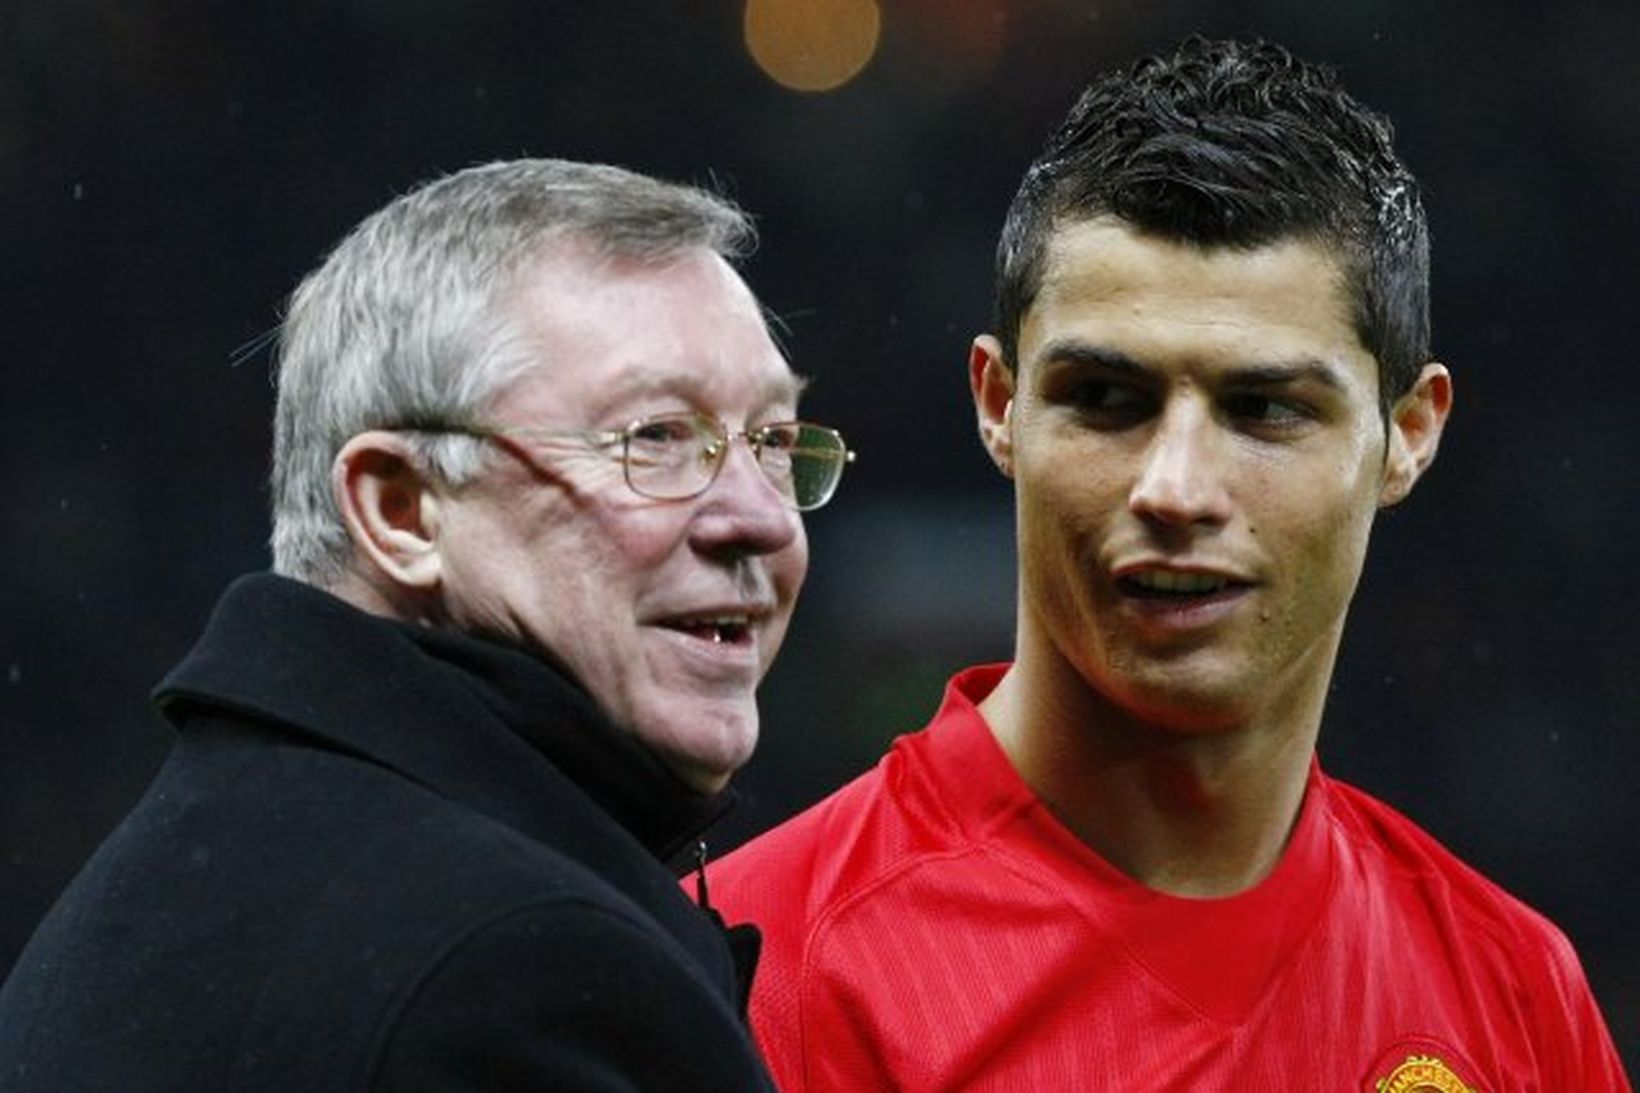 Ferguson ásamt hinum portúgalska Ronaldo, sem á sæti sitt víst …